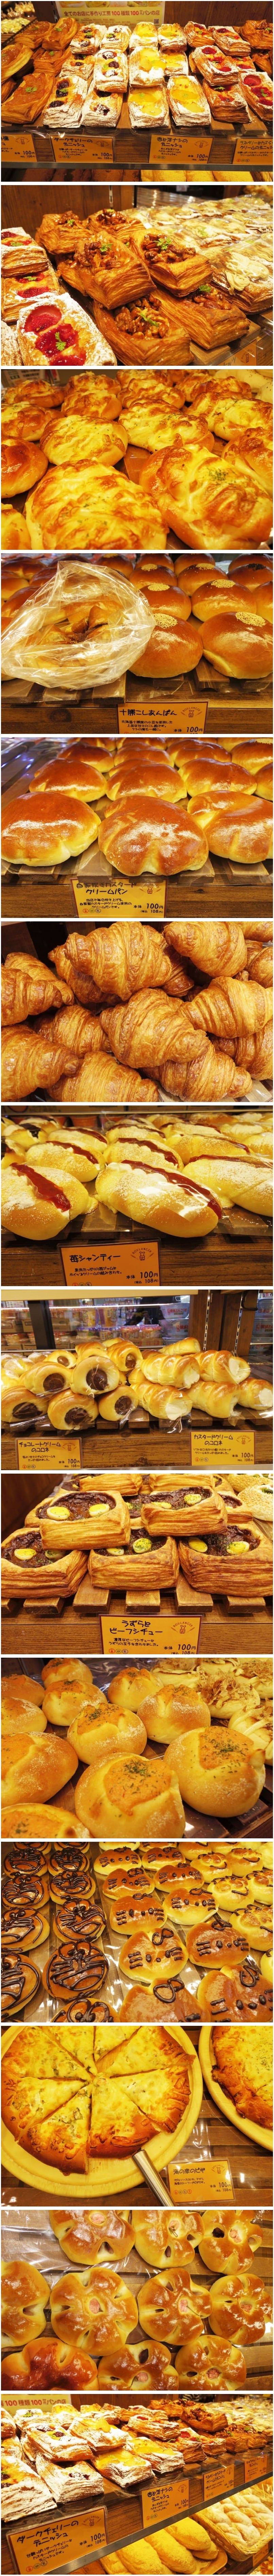 일본의 빵 가격